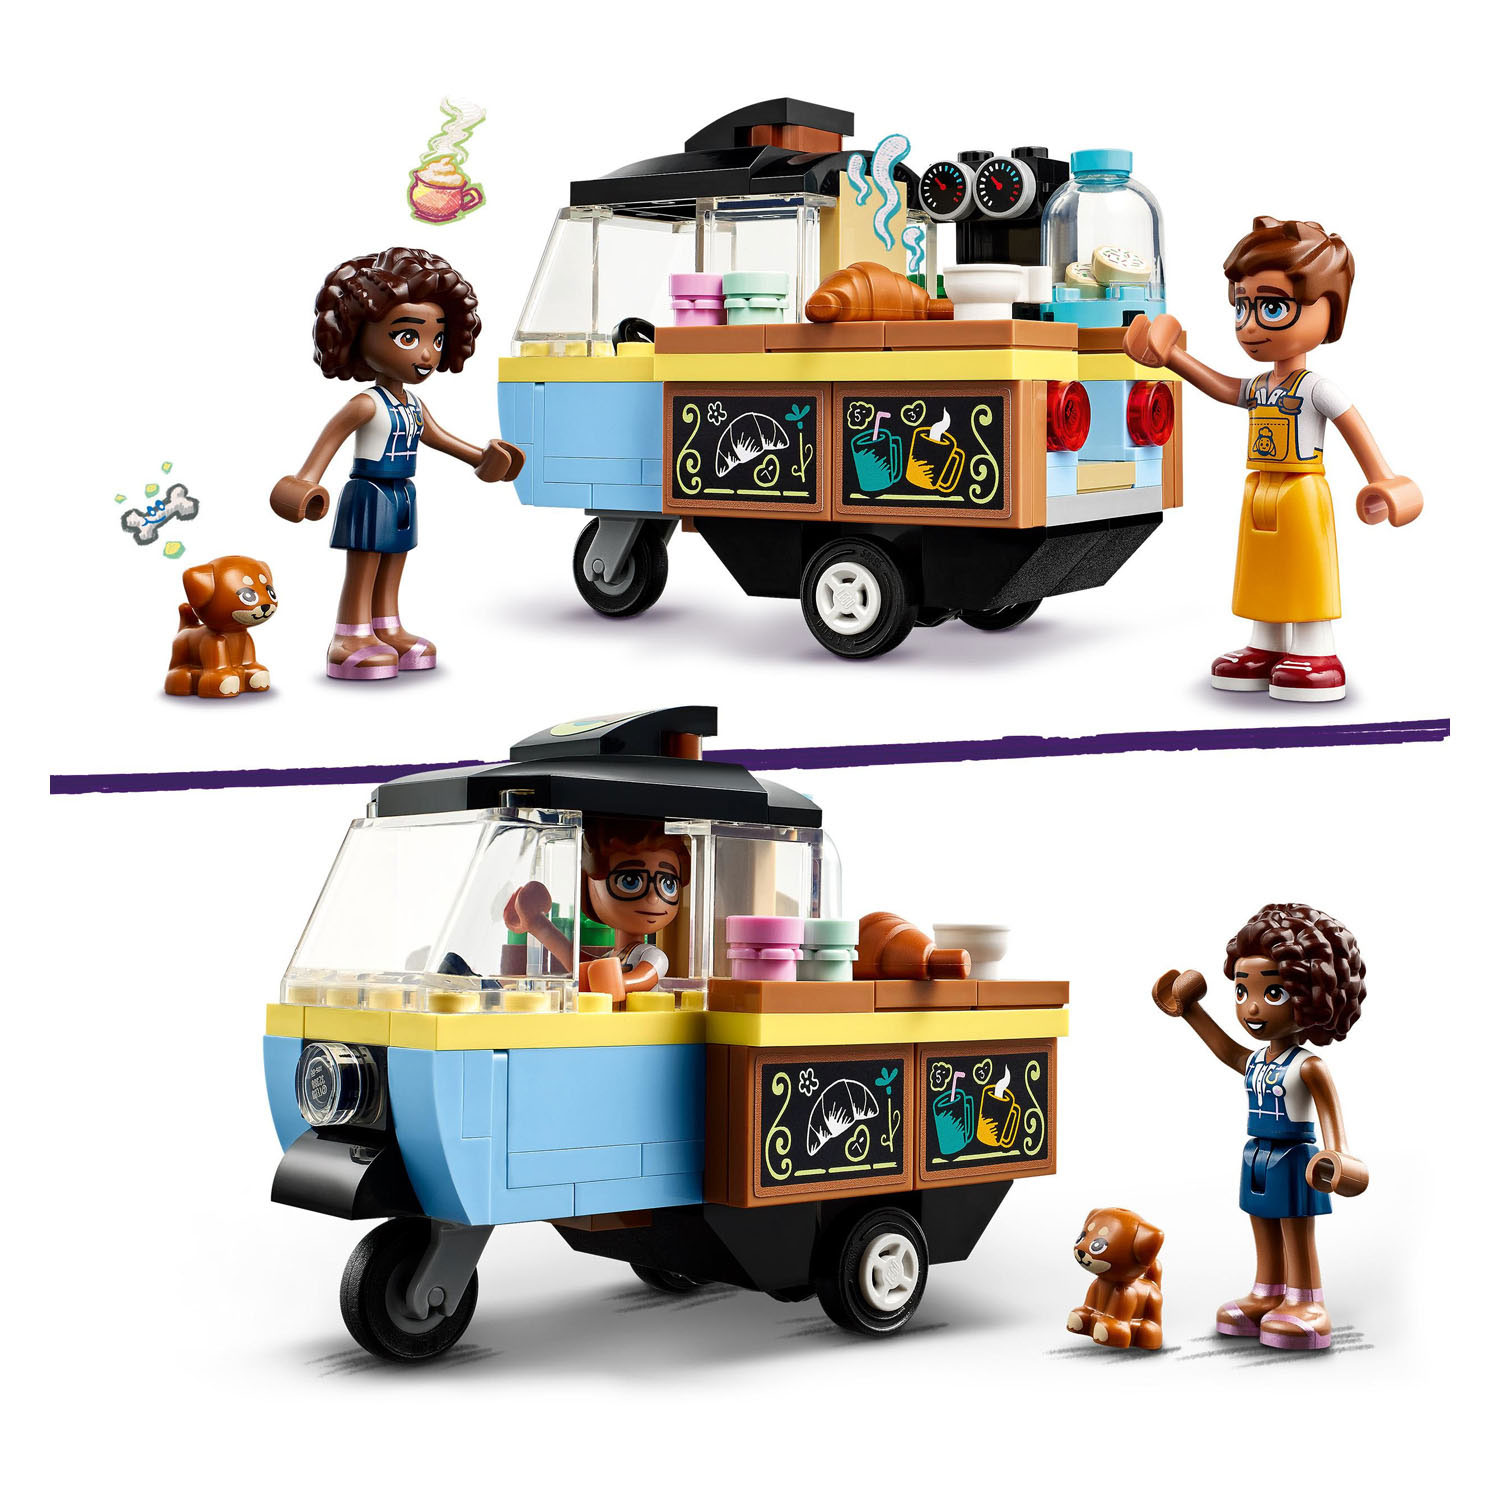 LEGO Friends 42606 Bäcker-Imbisswagen